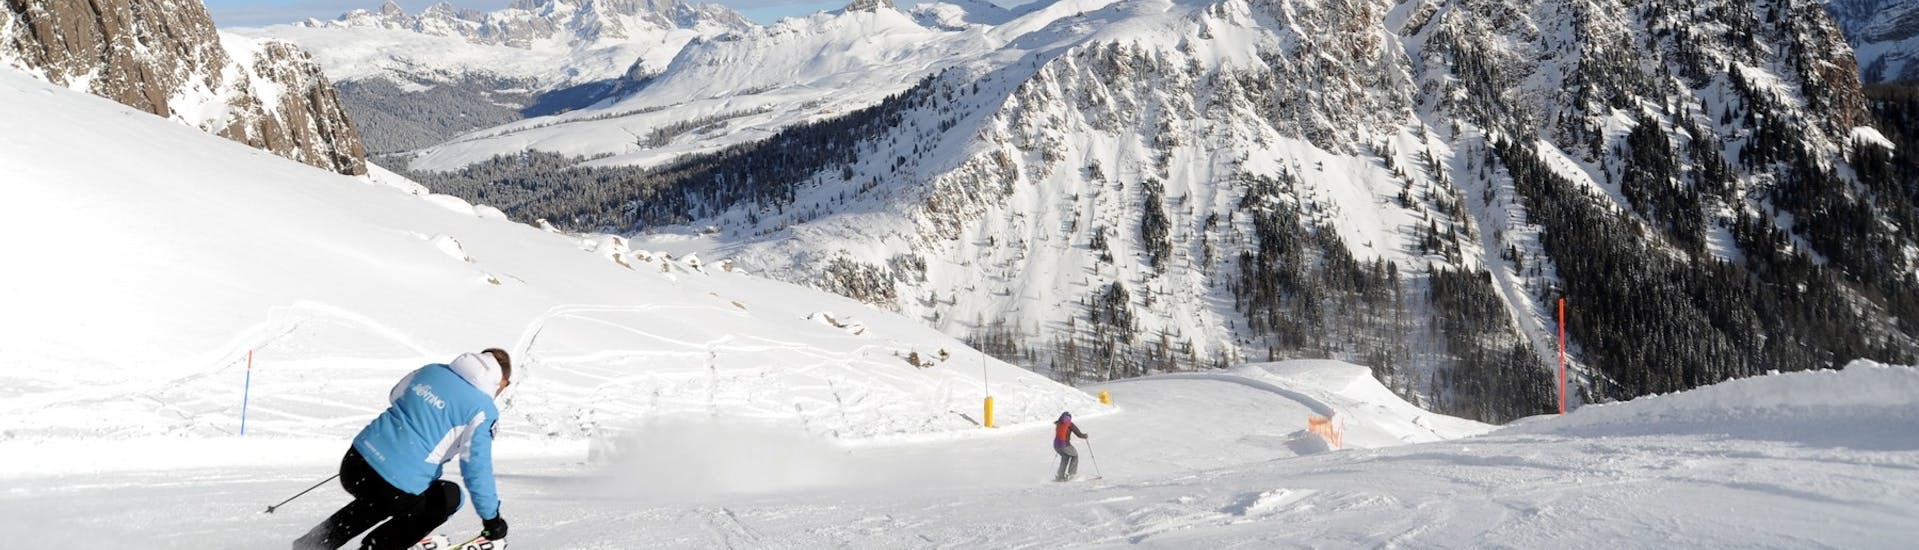 Clases de esquí privadas para niños a partir de 6 años para todos los niveles.